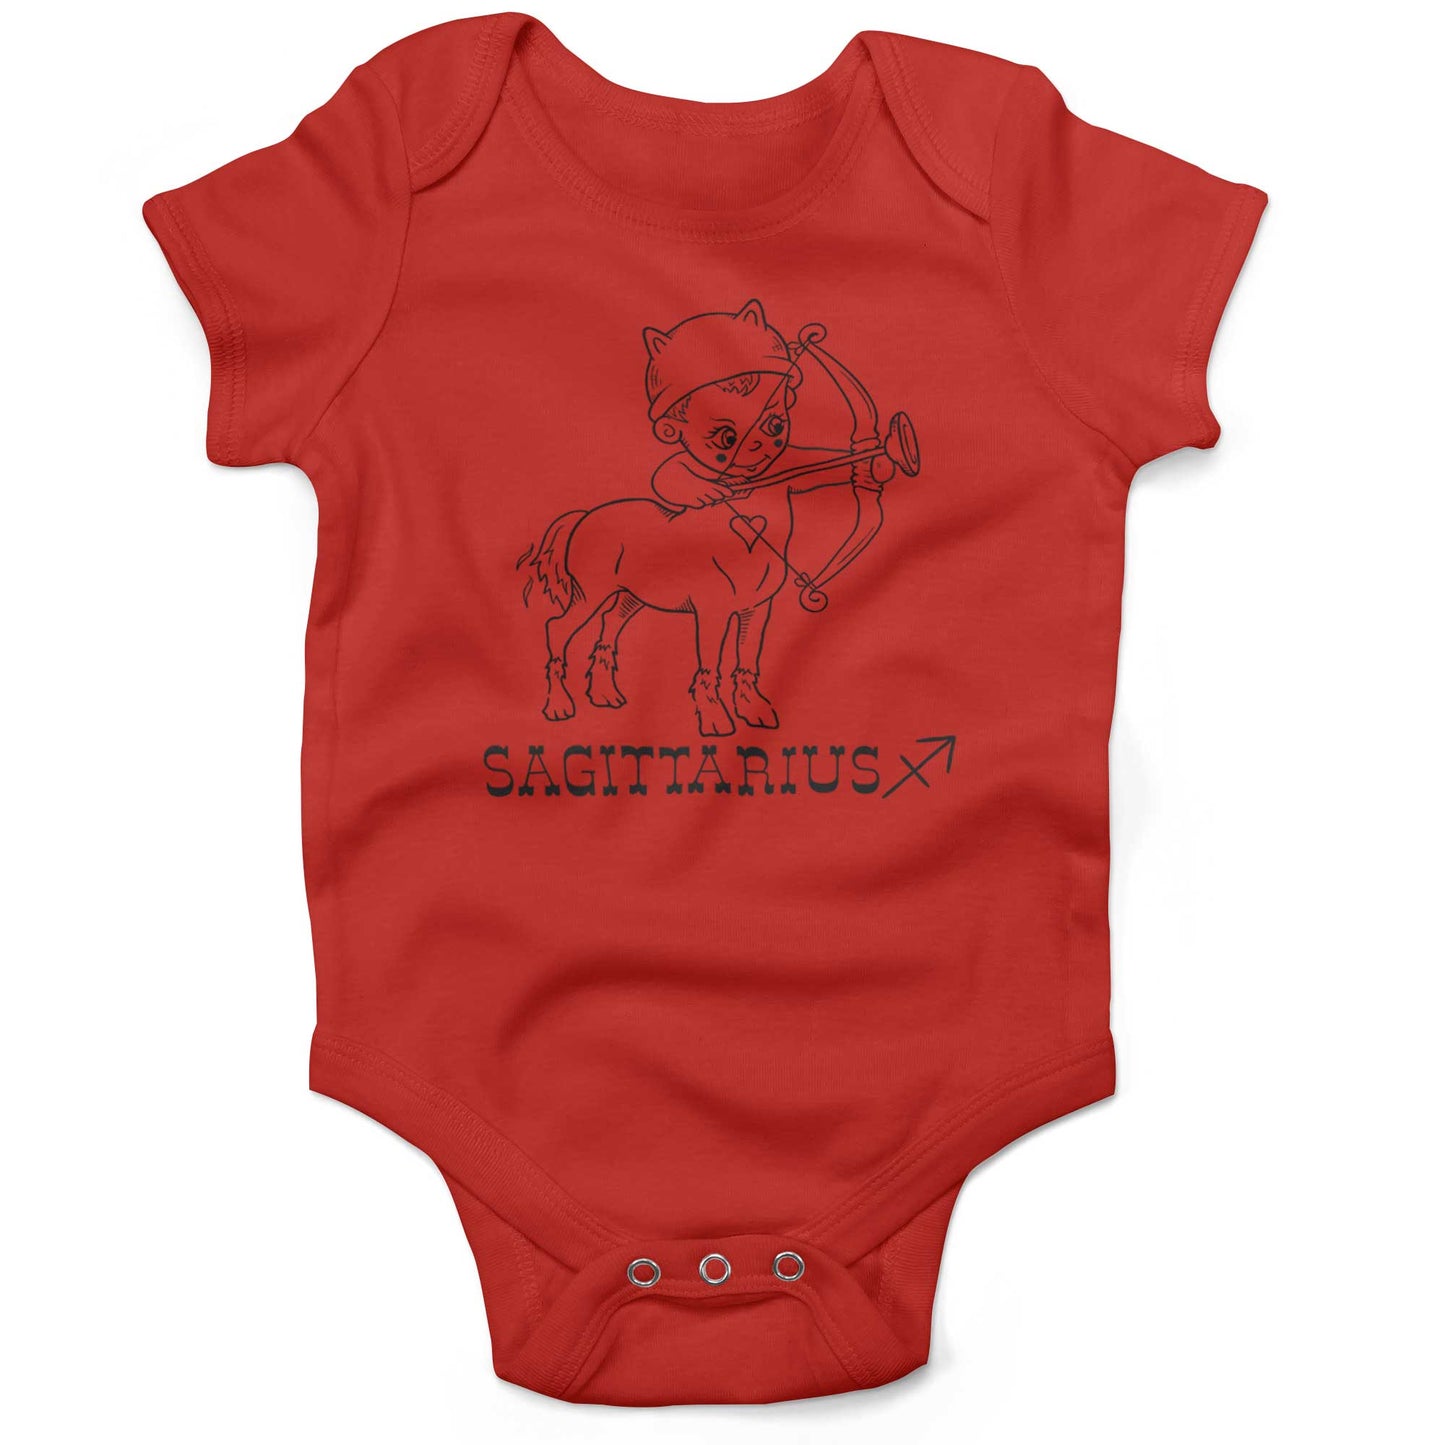 Sagittarius Infant Bodysuit